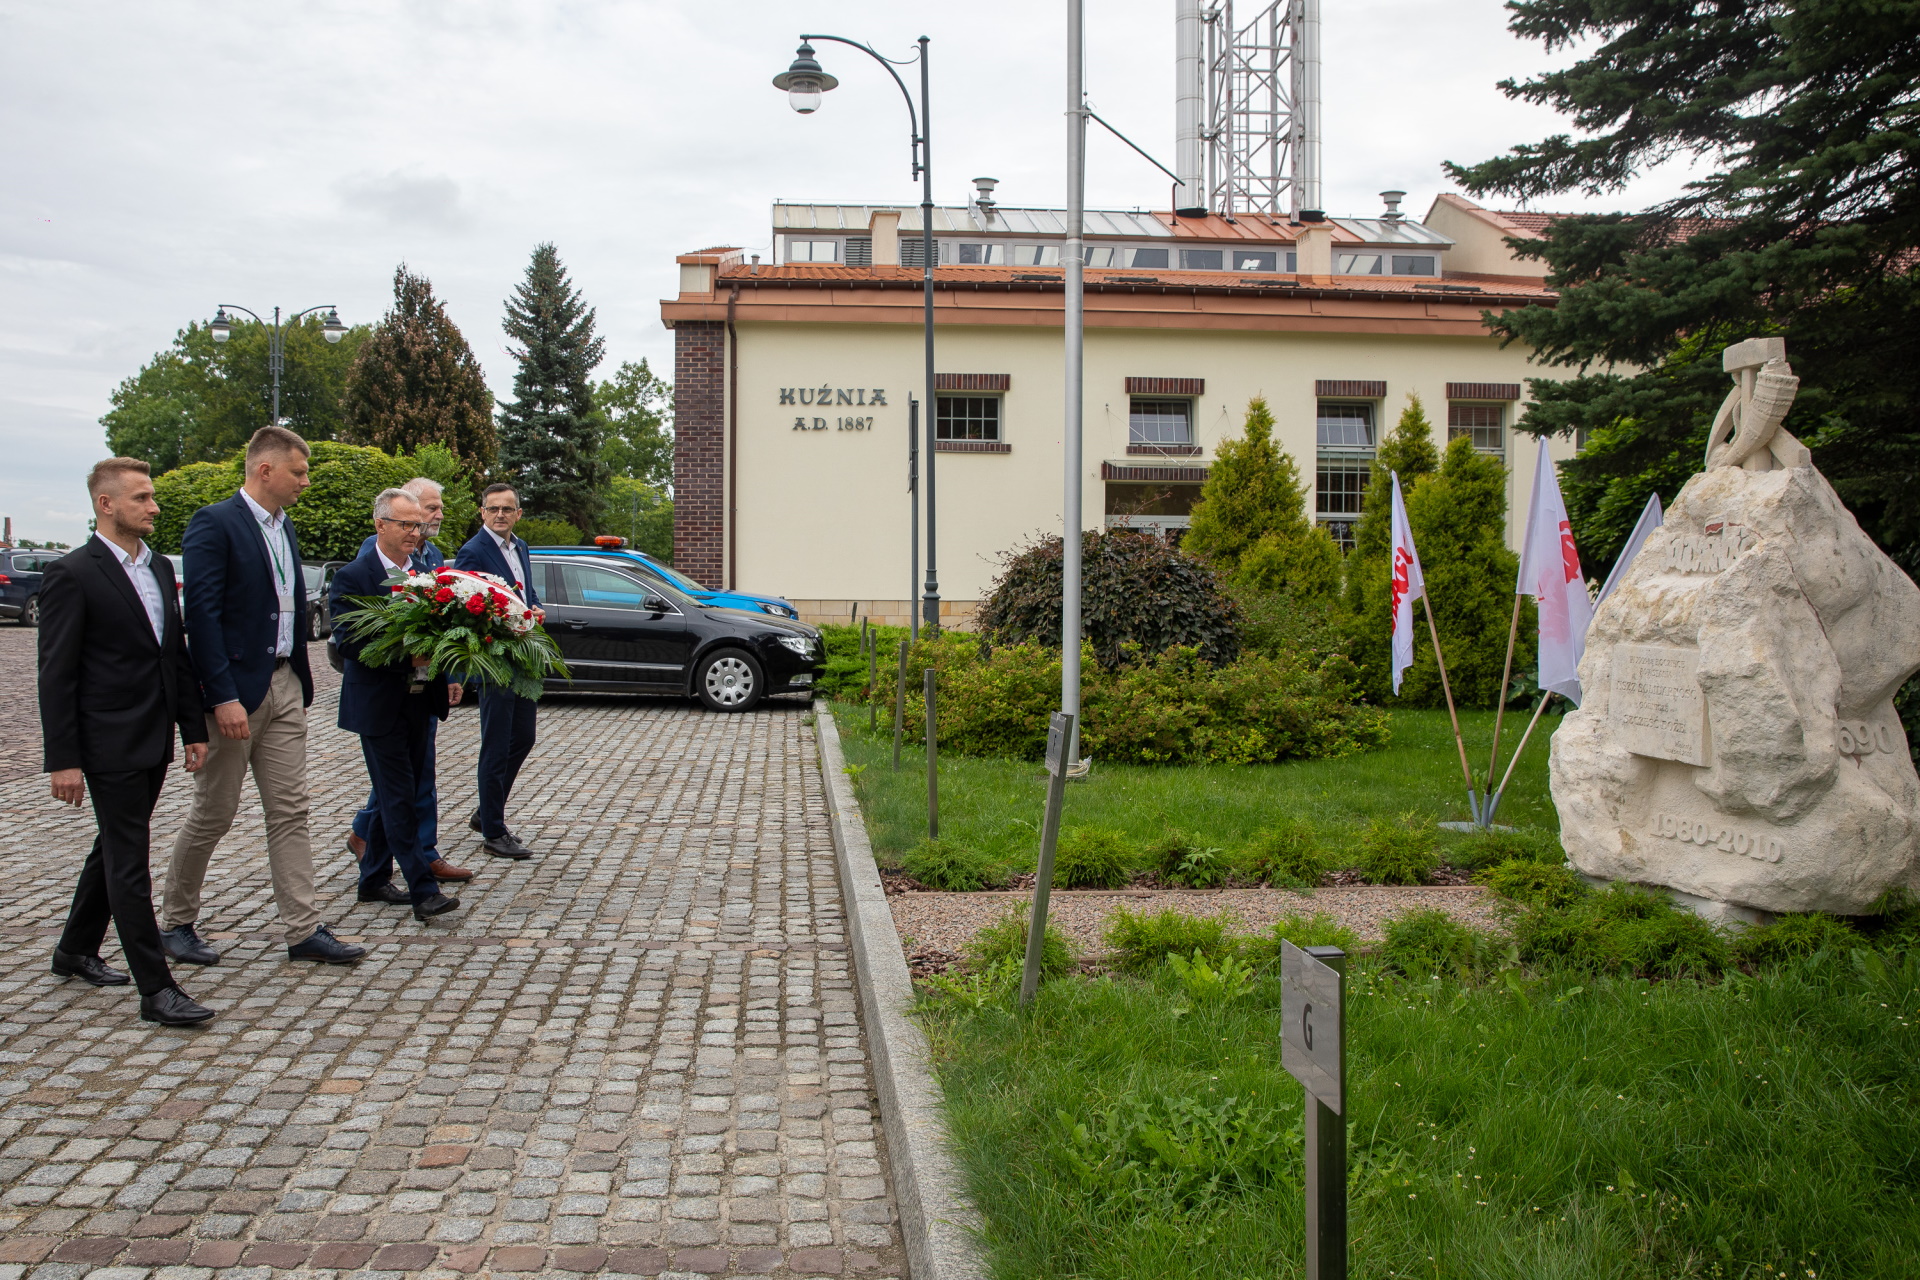 Delegacja składa kwiaty przy pomniku. W tle budynek z napisem kuźnia